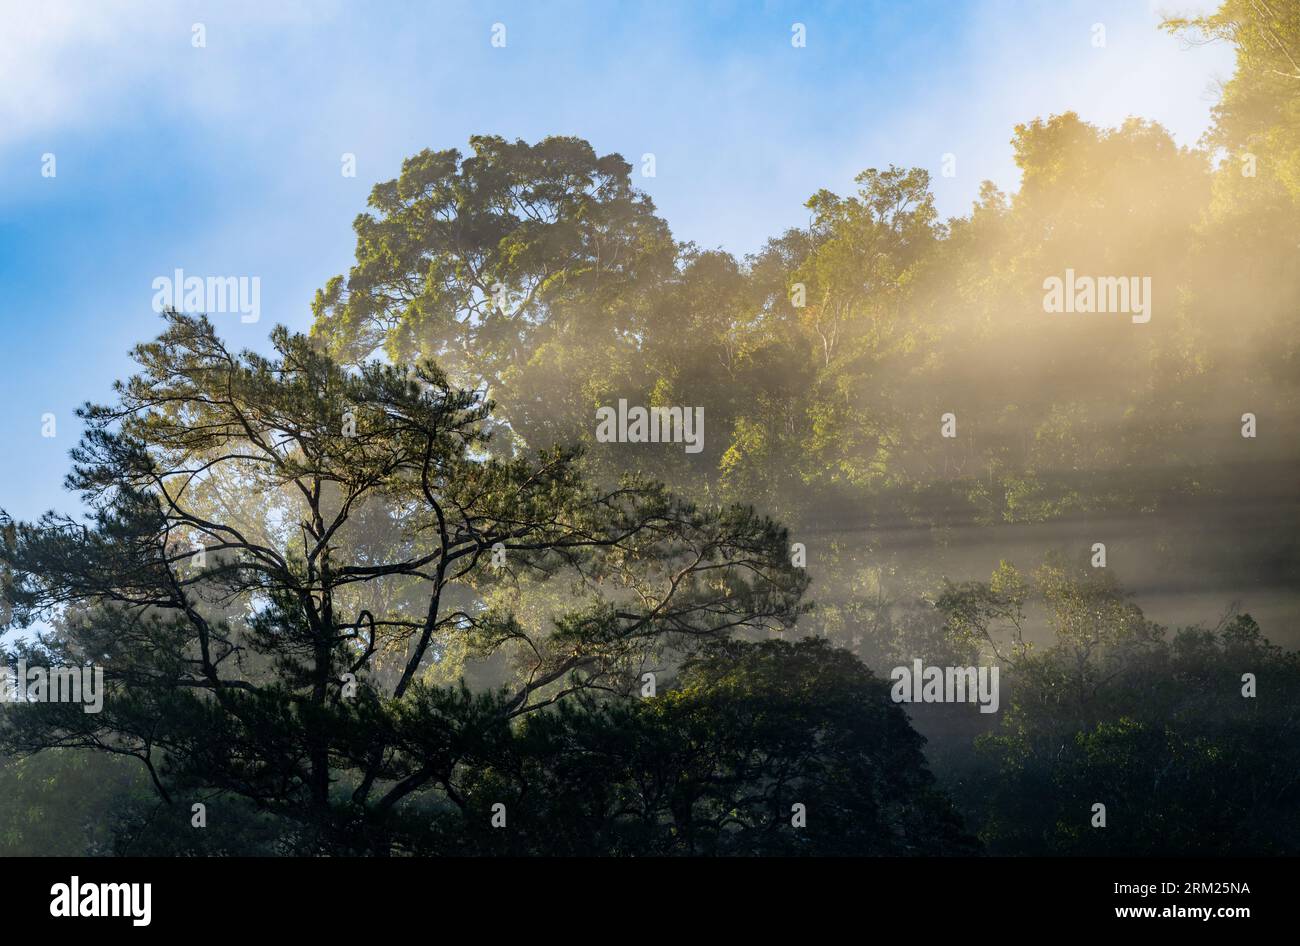 La lumière du soleil brille à travers le brouillard matinal dans la forêt tropicale. Sumatra, Indonésie. Banque D'Images